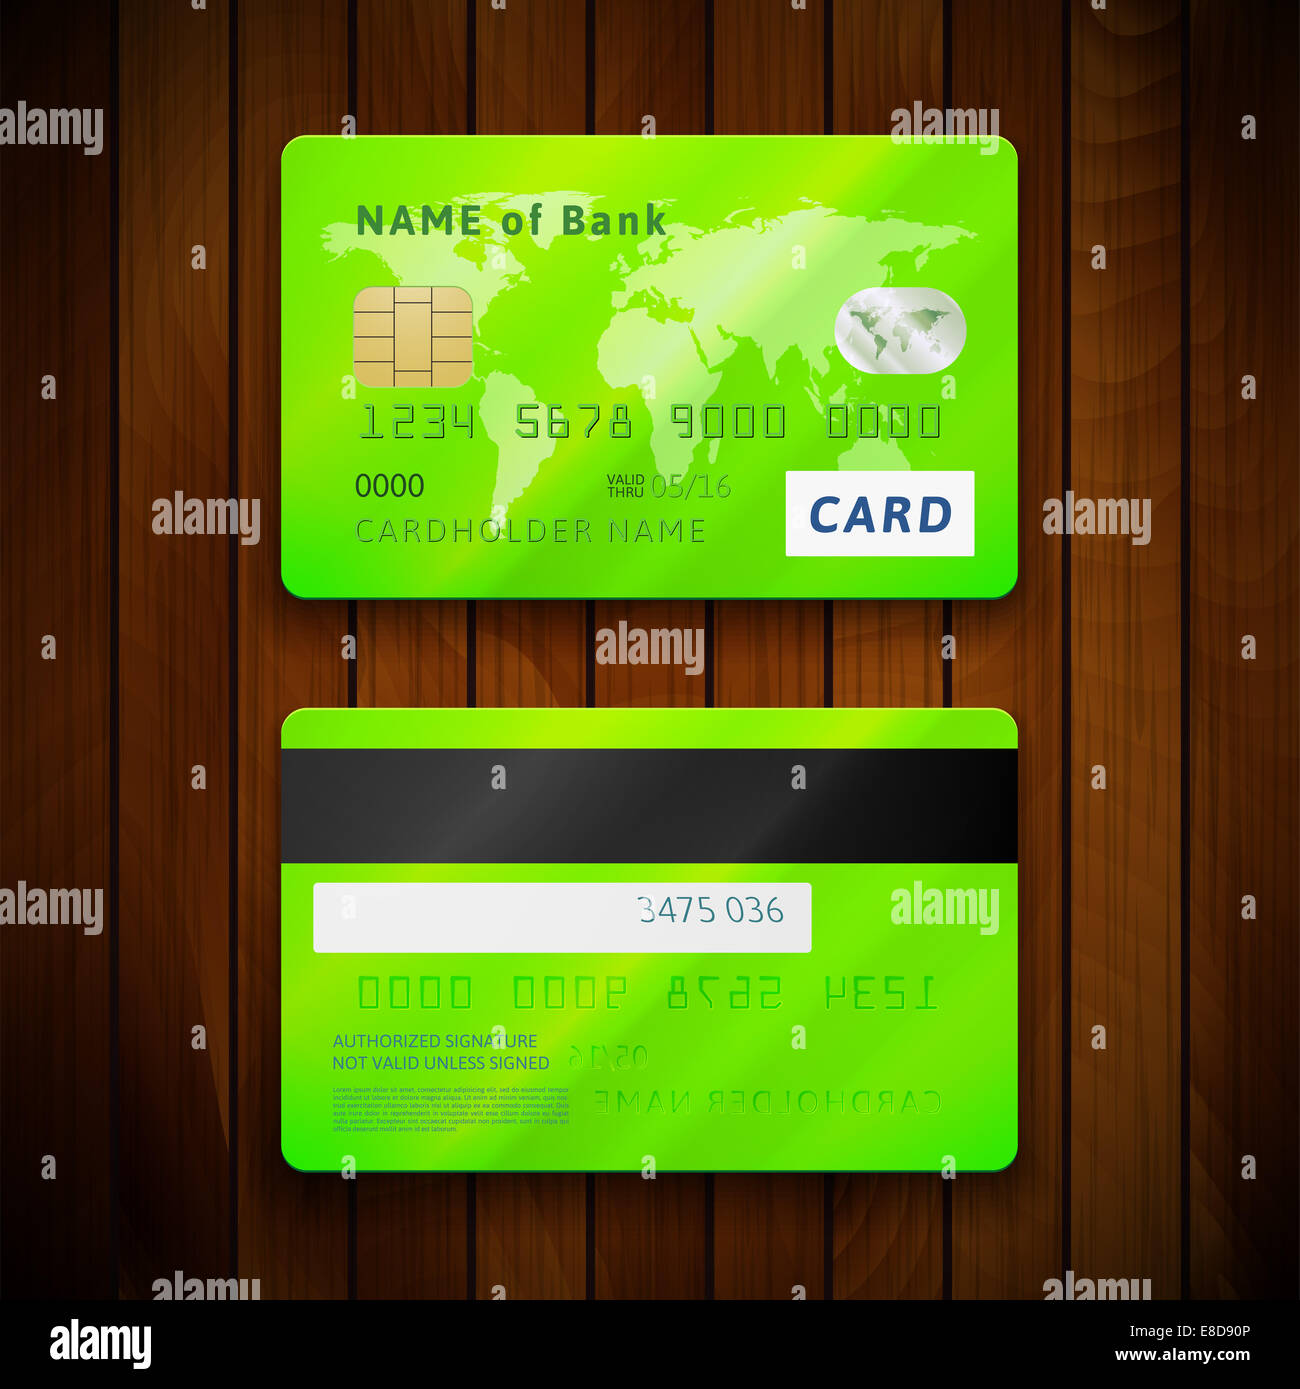 Дебетовые карты с деньгами на счету. Банковская карта с двух сторон. Банеовская карат с двух сторон. Банковская карта с 2 сторон. Кредитная карта с двух сторон.